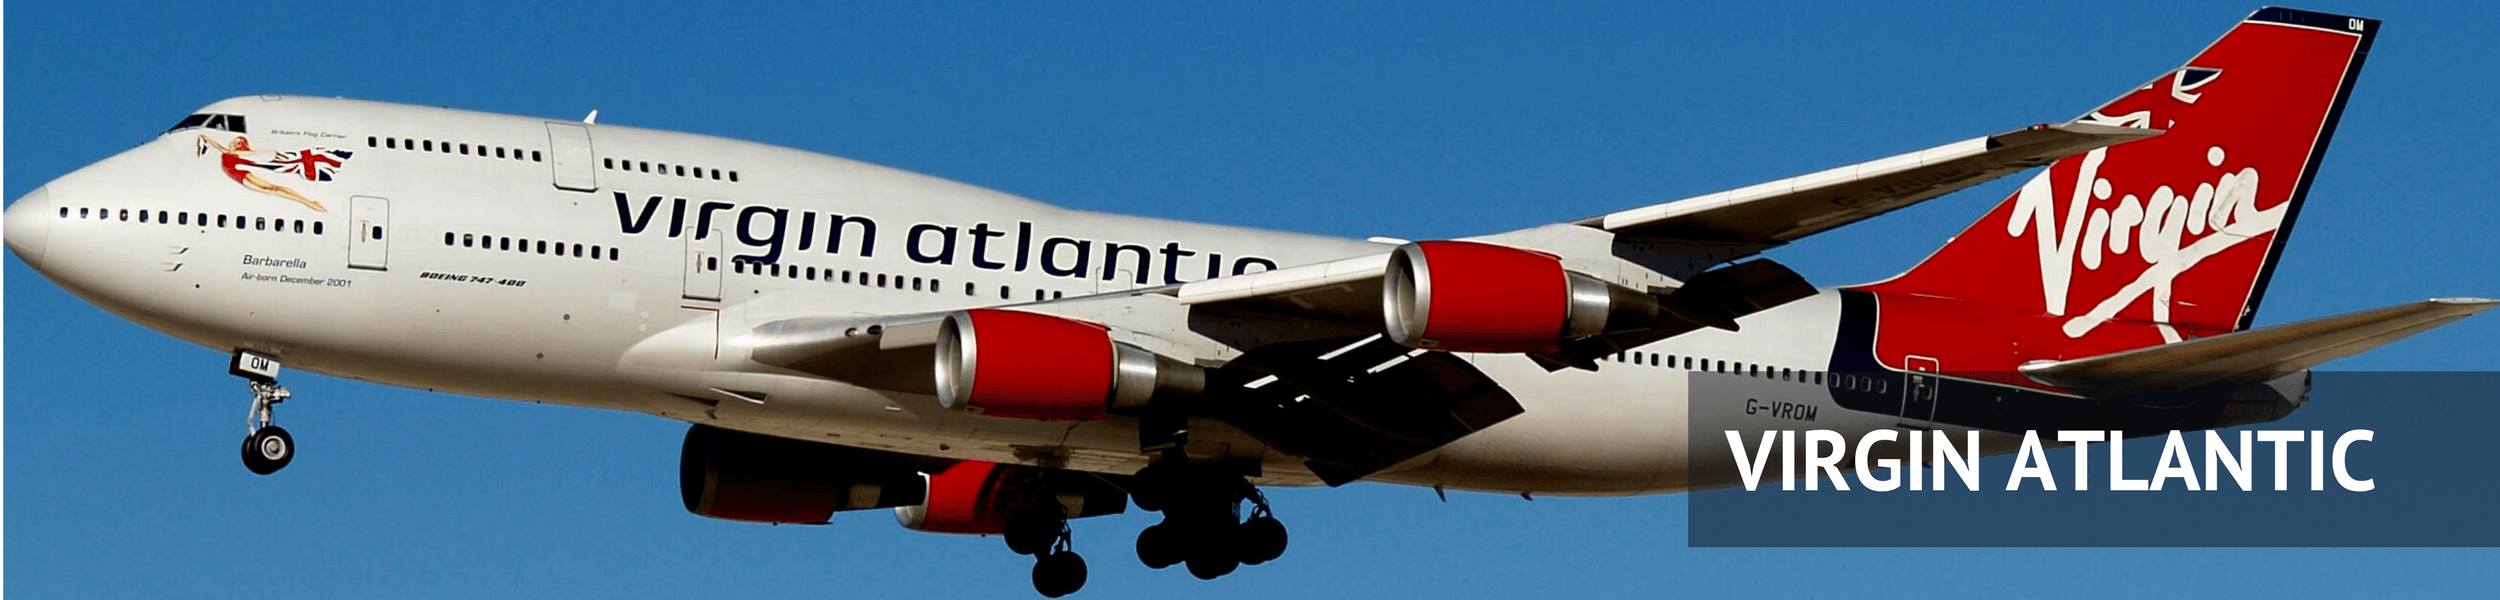 Virgin Atlantic Economy Review